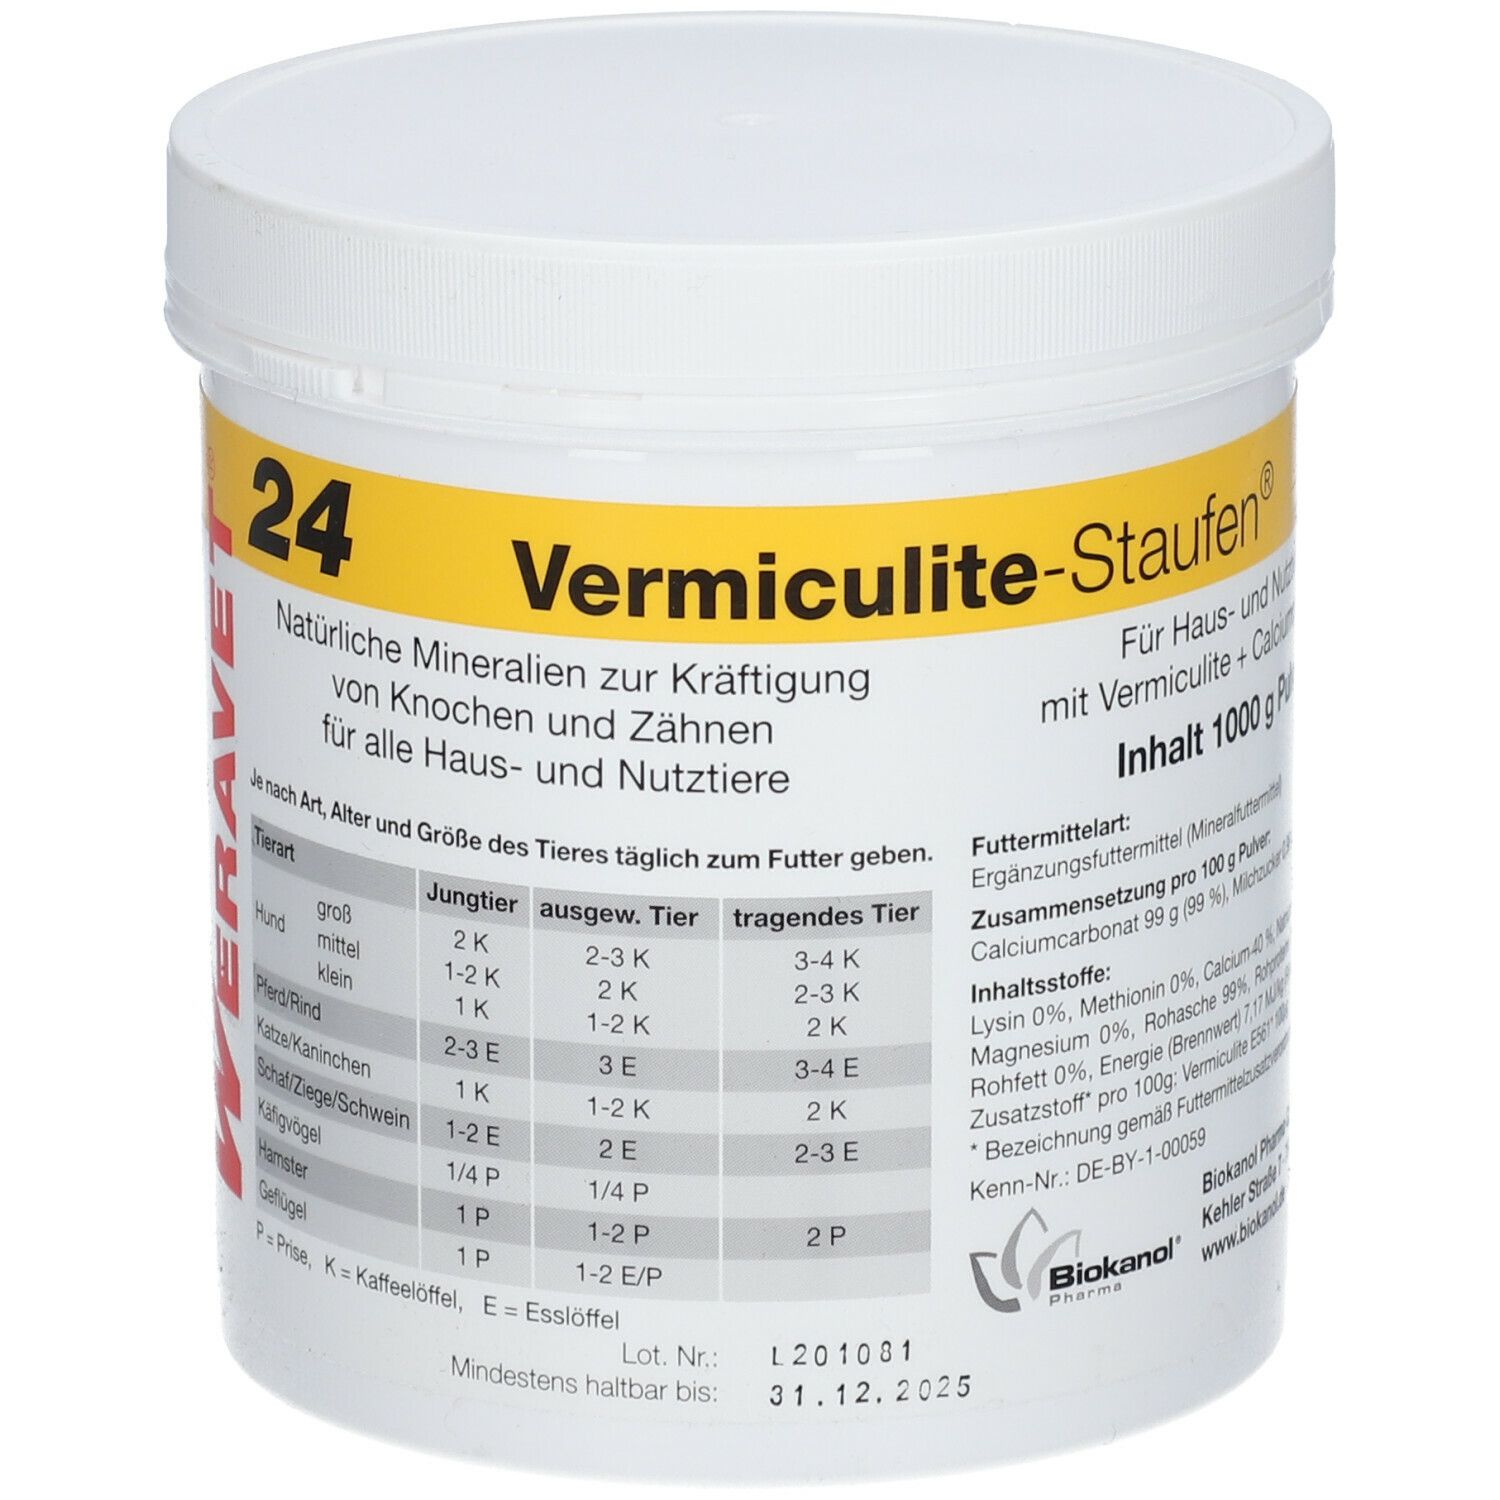 Vermiculite-Staufen®